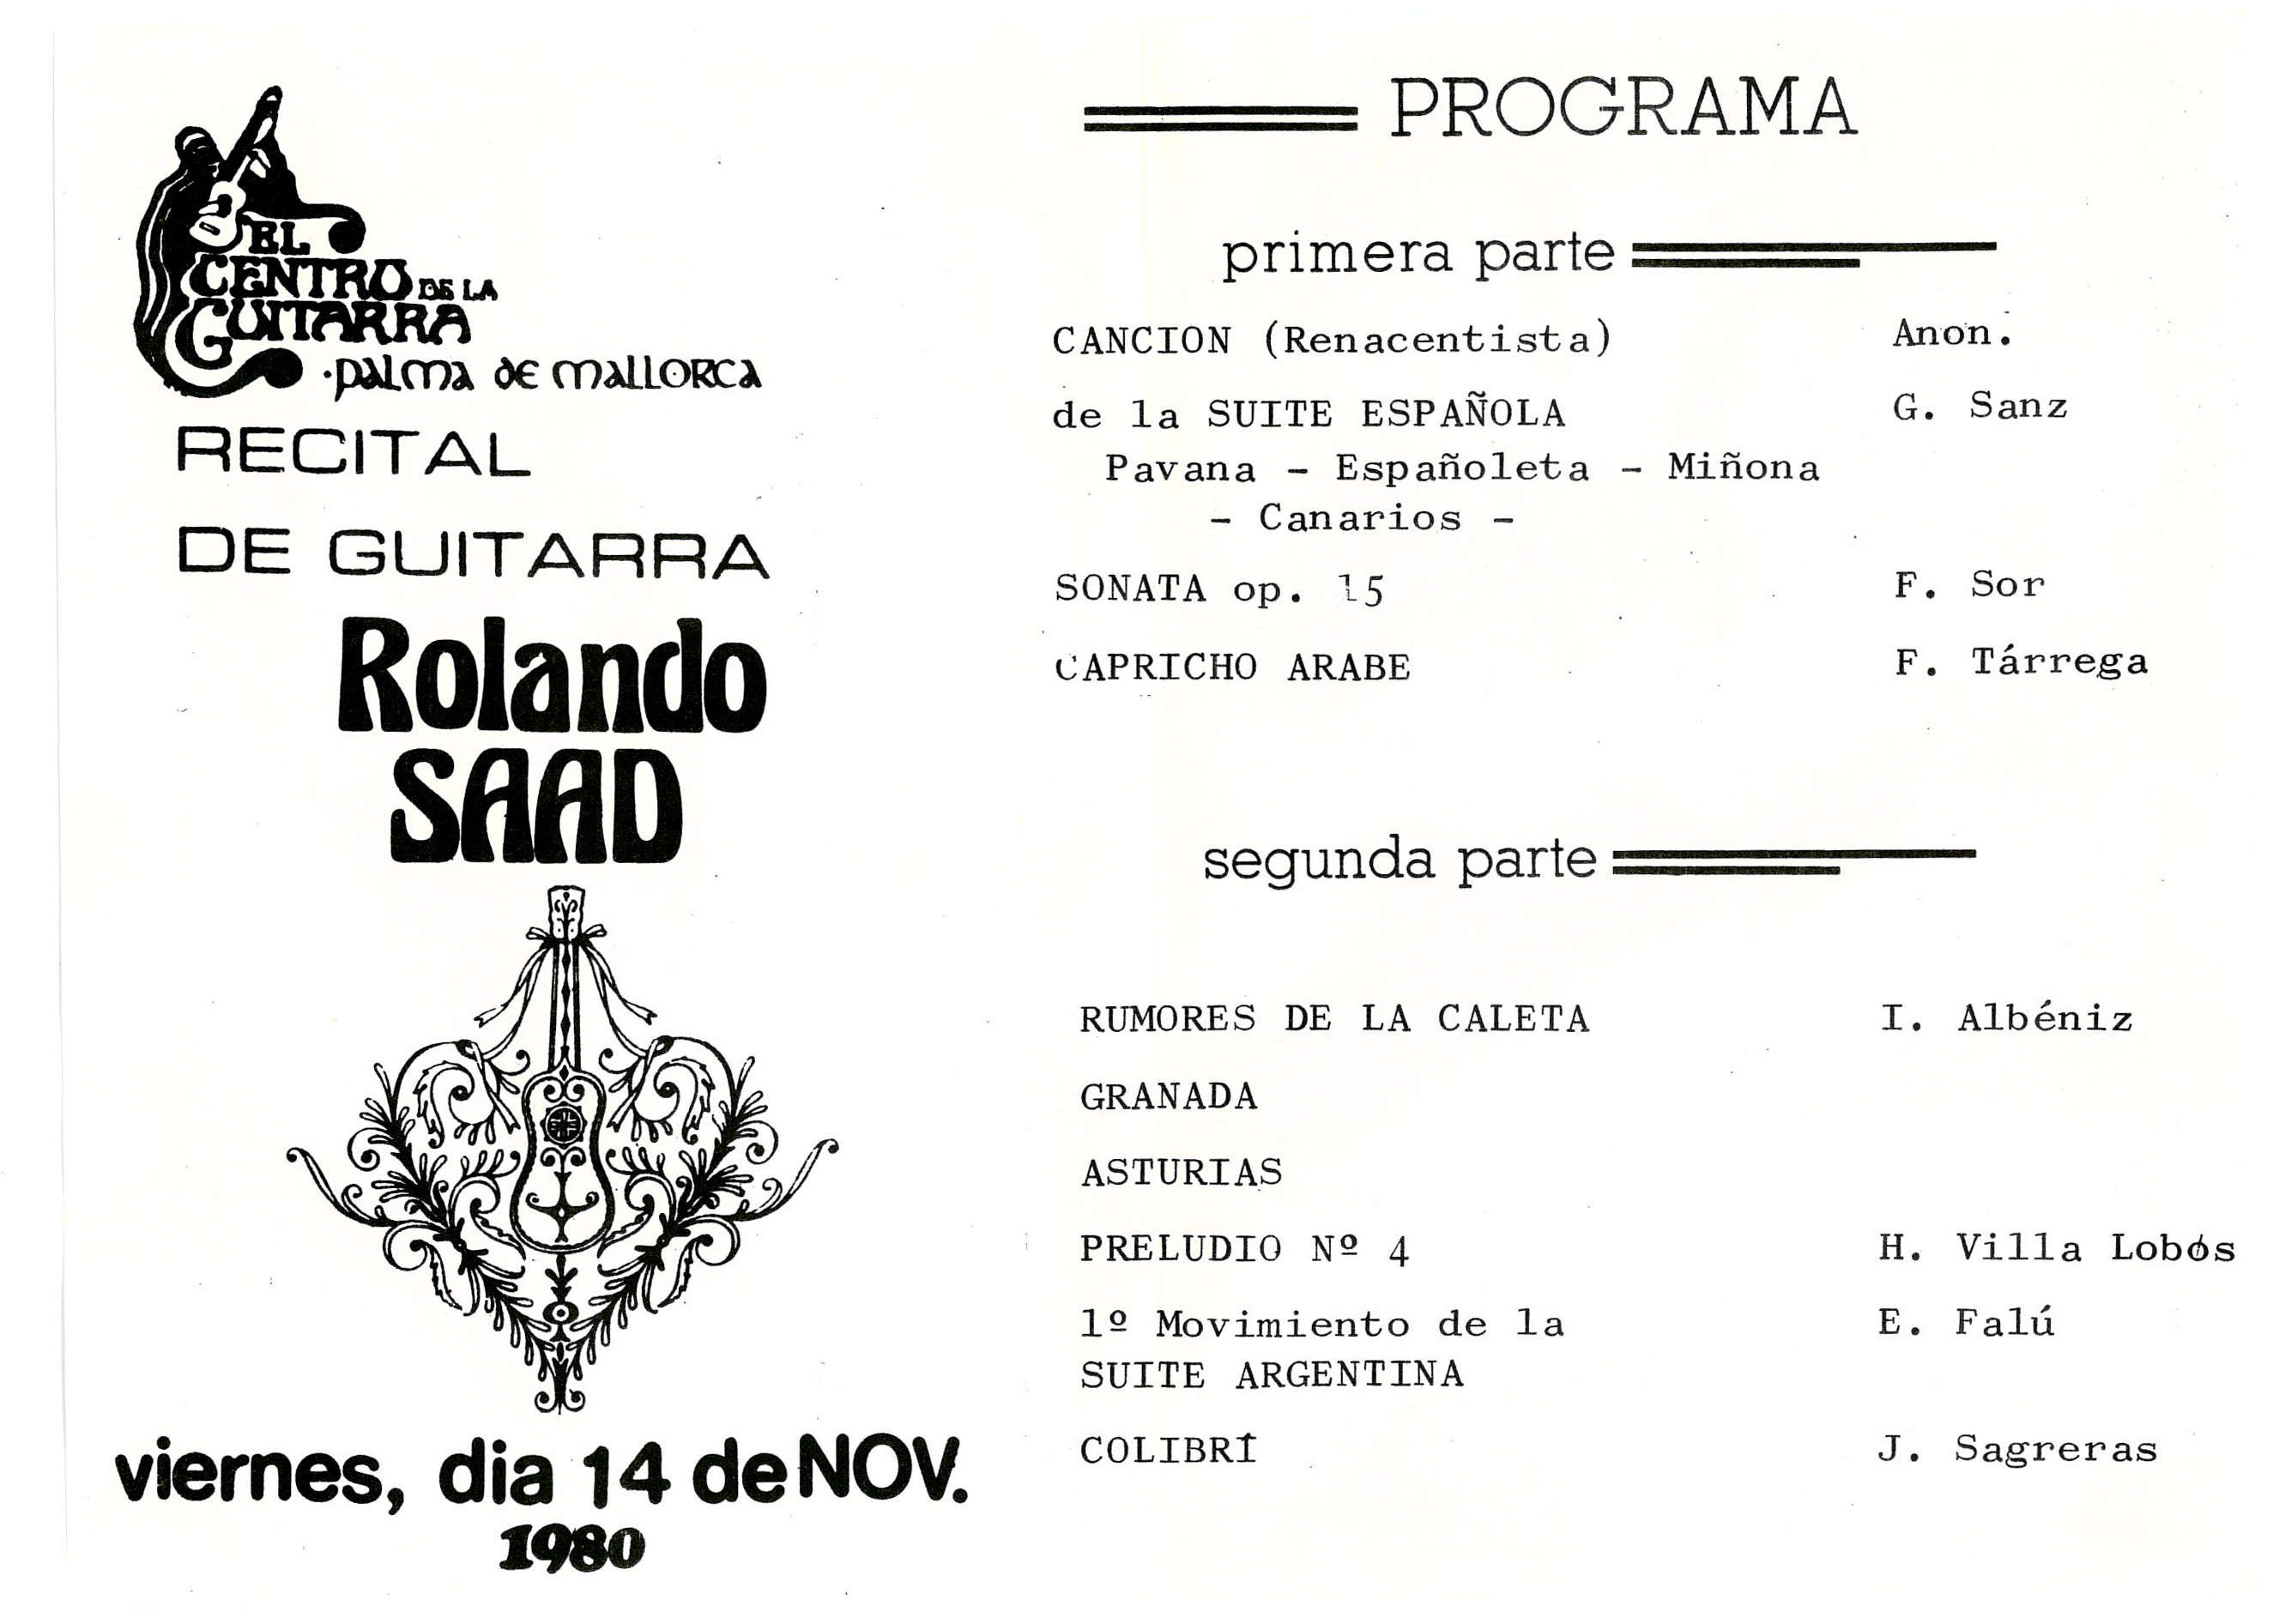 Programa de mano del primer concierto en Palma de Mallorca